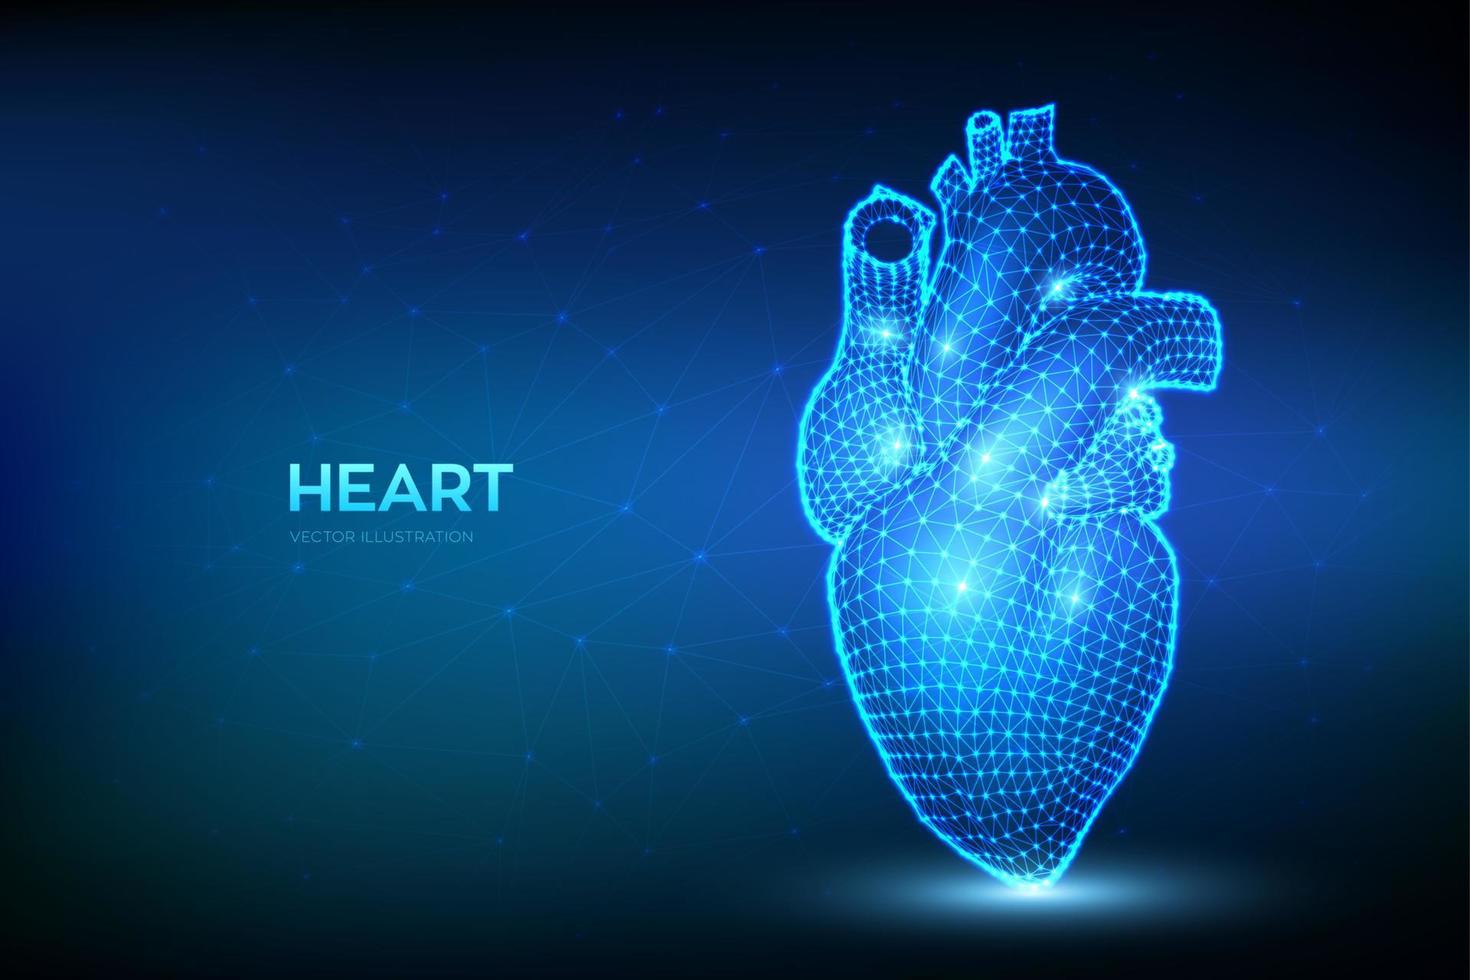 hjärta. lågt månghörnigt mänskligt hjärta. abstrakt wireframe anatomi organ. kardiologi medicin, organhälsa, medicinsk vetenskap, livssjukvård, sjukdomskoncept. 3D vektorillustration. vektor